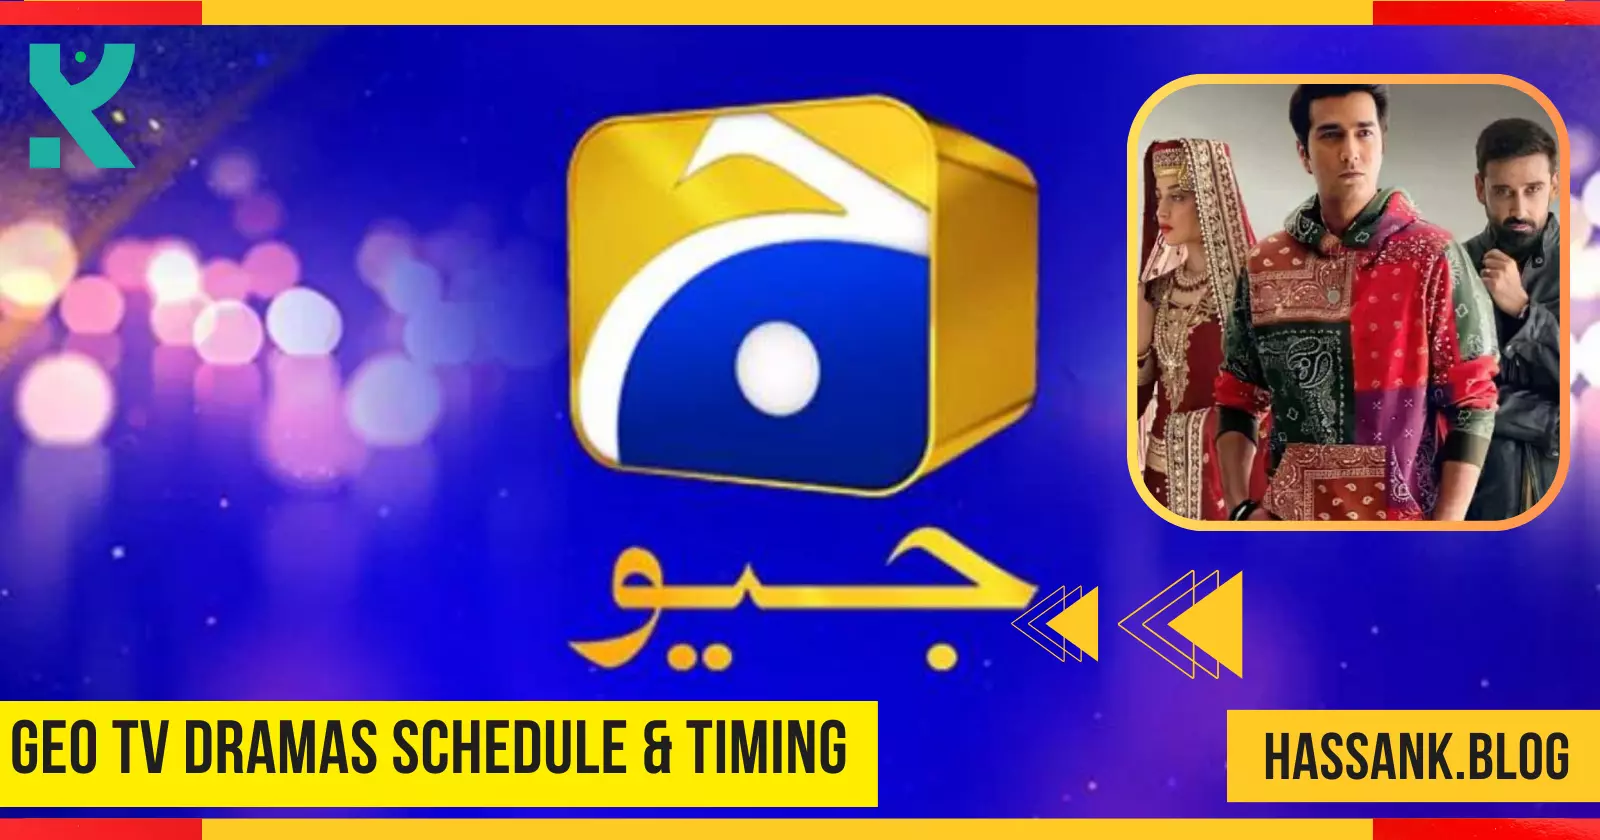 Geo TV Dramas Schedule & Timing